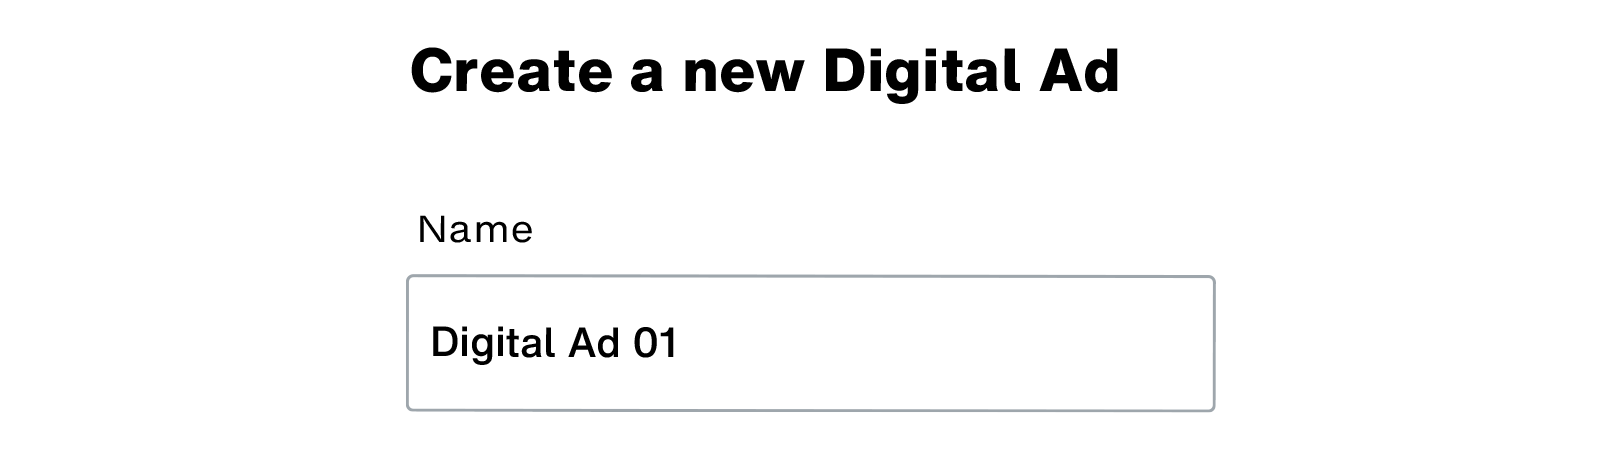 Name of digital ad_01